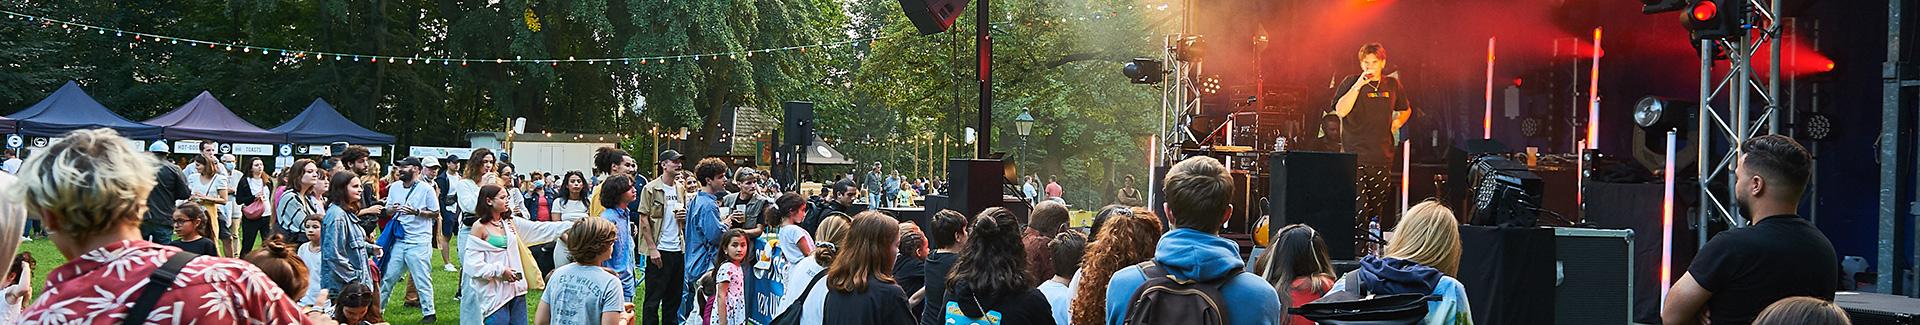 Banner activiteiten voor de jeugd in Ukkel - concertactivités jeunesse à Uccle - concert